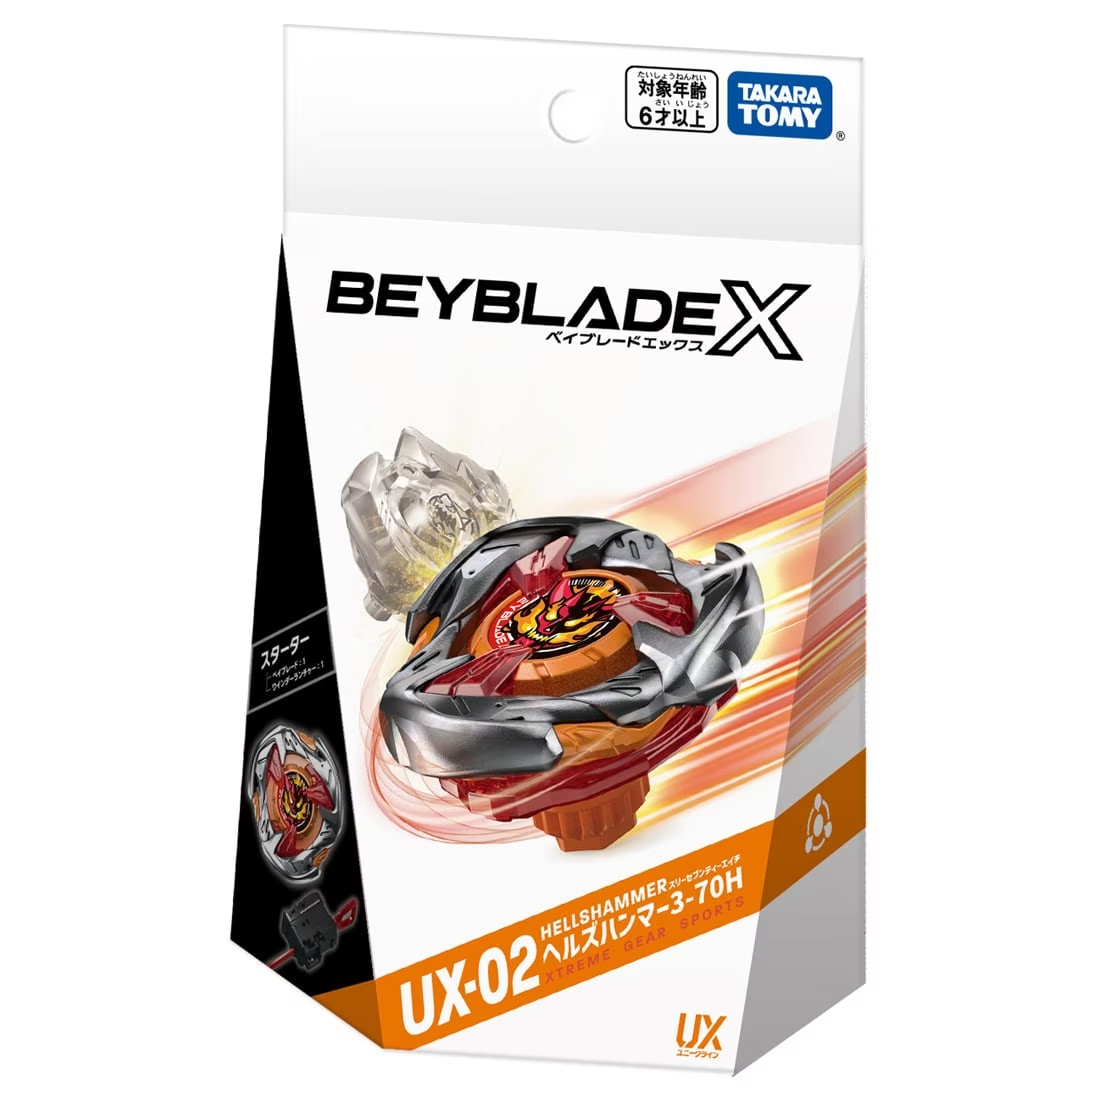 BEYBLADE X『UX-02 スターター ヘルズハンマー3-70H』ベイブレード-004